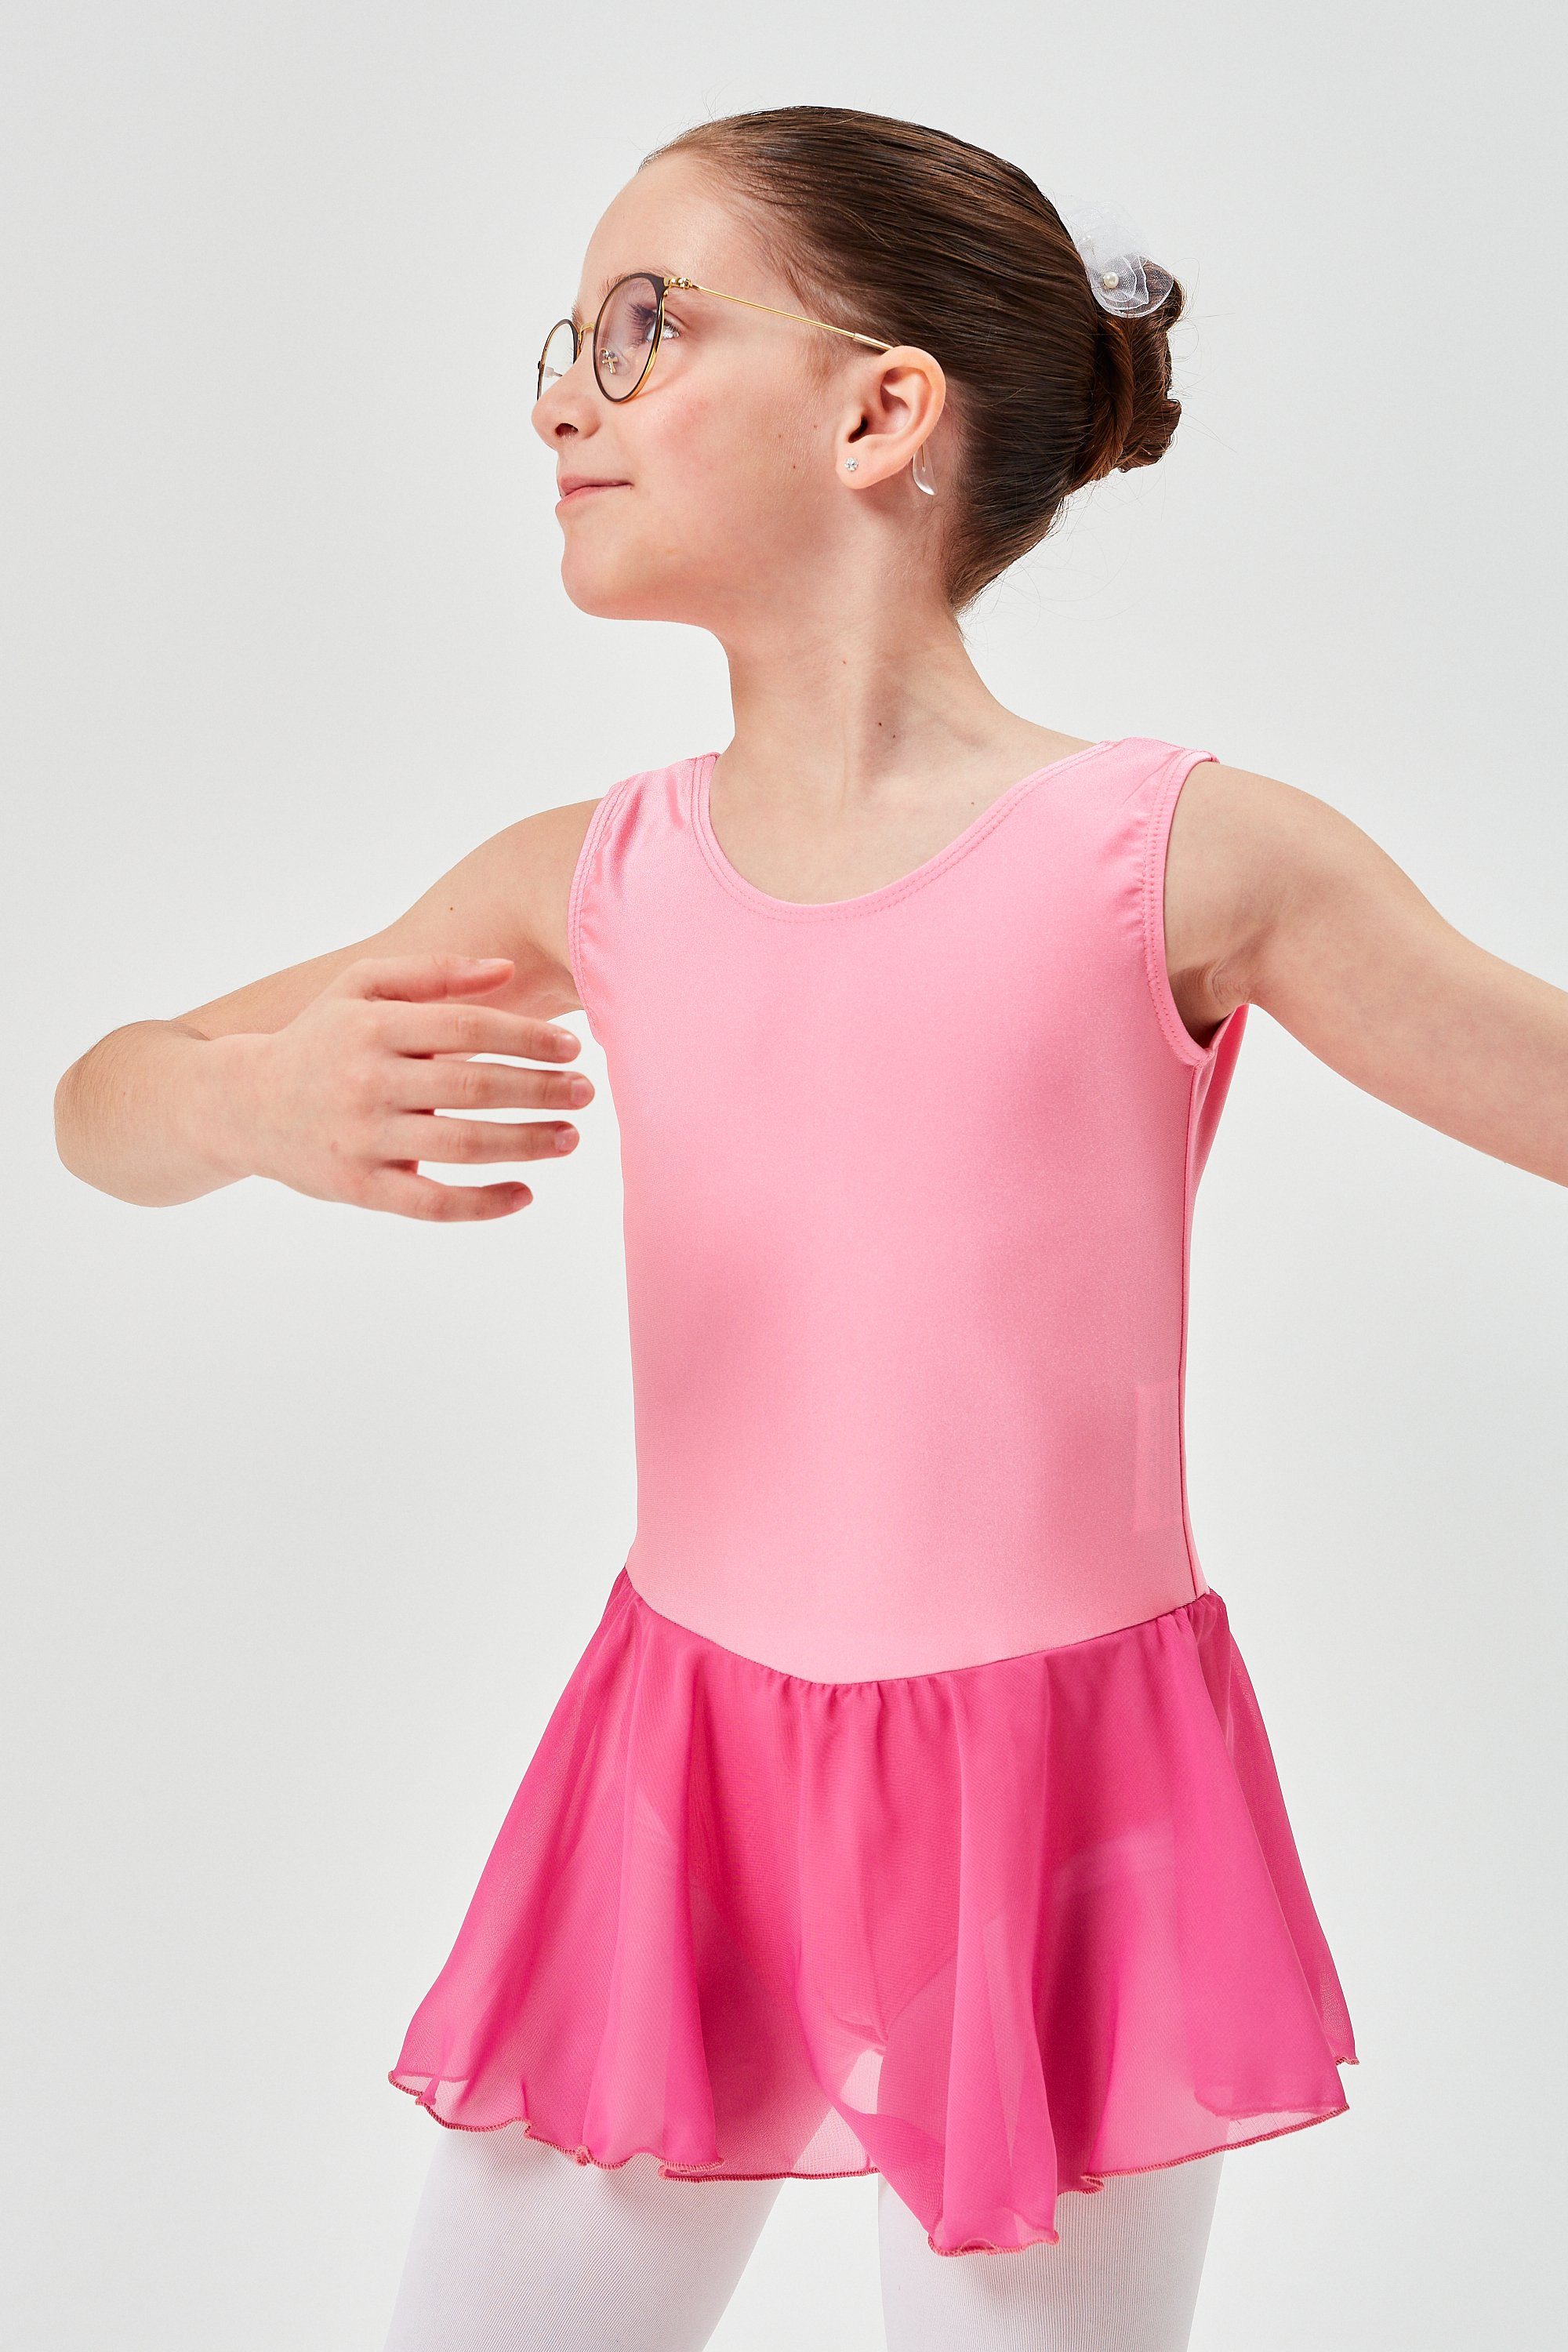 tanzmuster Chiffonkleid Ballettkleid Polly aus Trikot Ballett glänzendem Chiffonrock Mädchen mit Lycra für altrosa